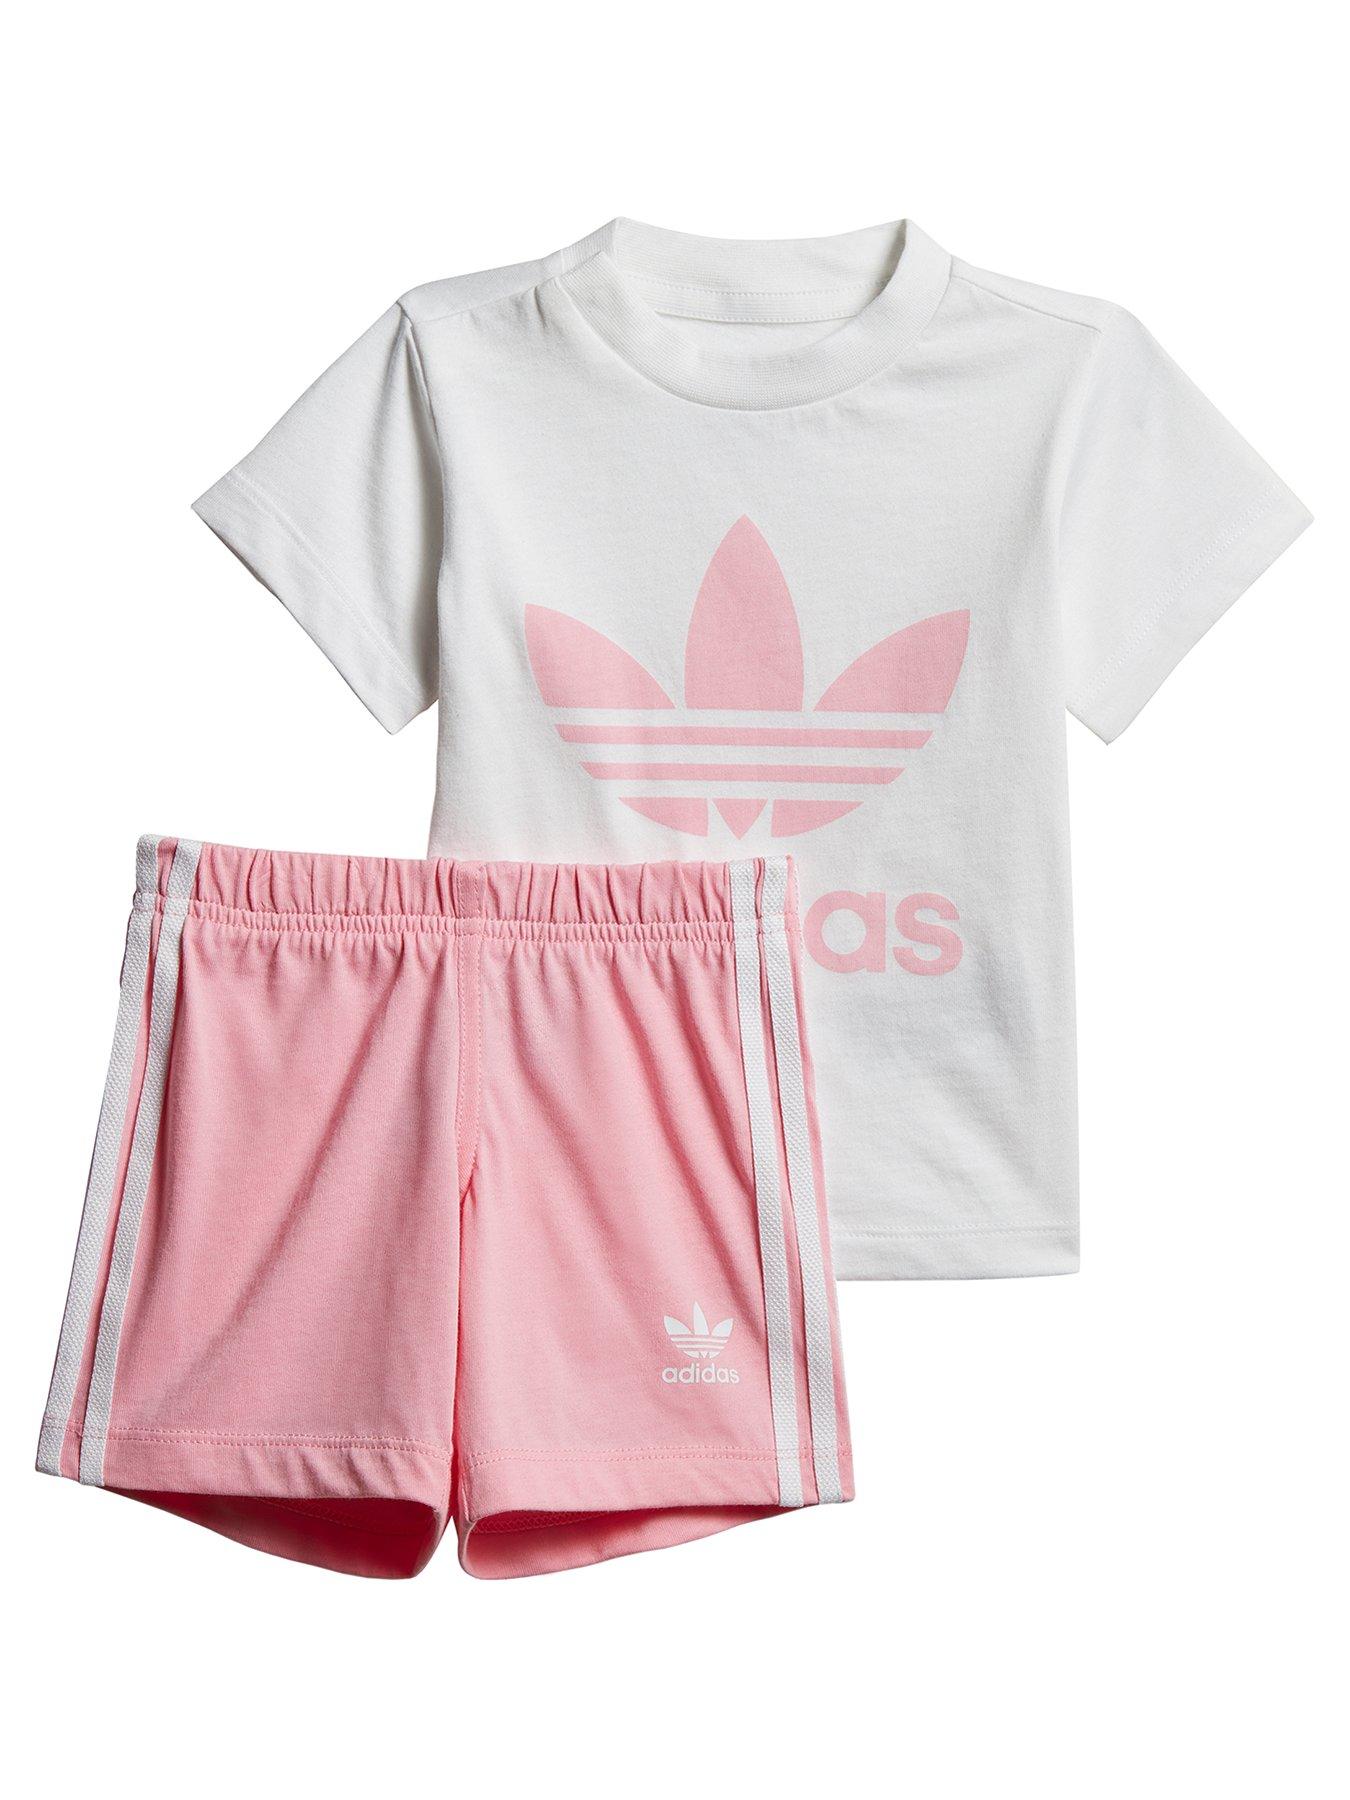 baby boy adidas shorts and shirt